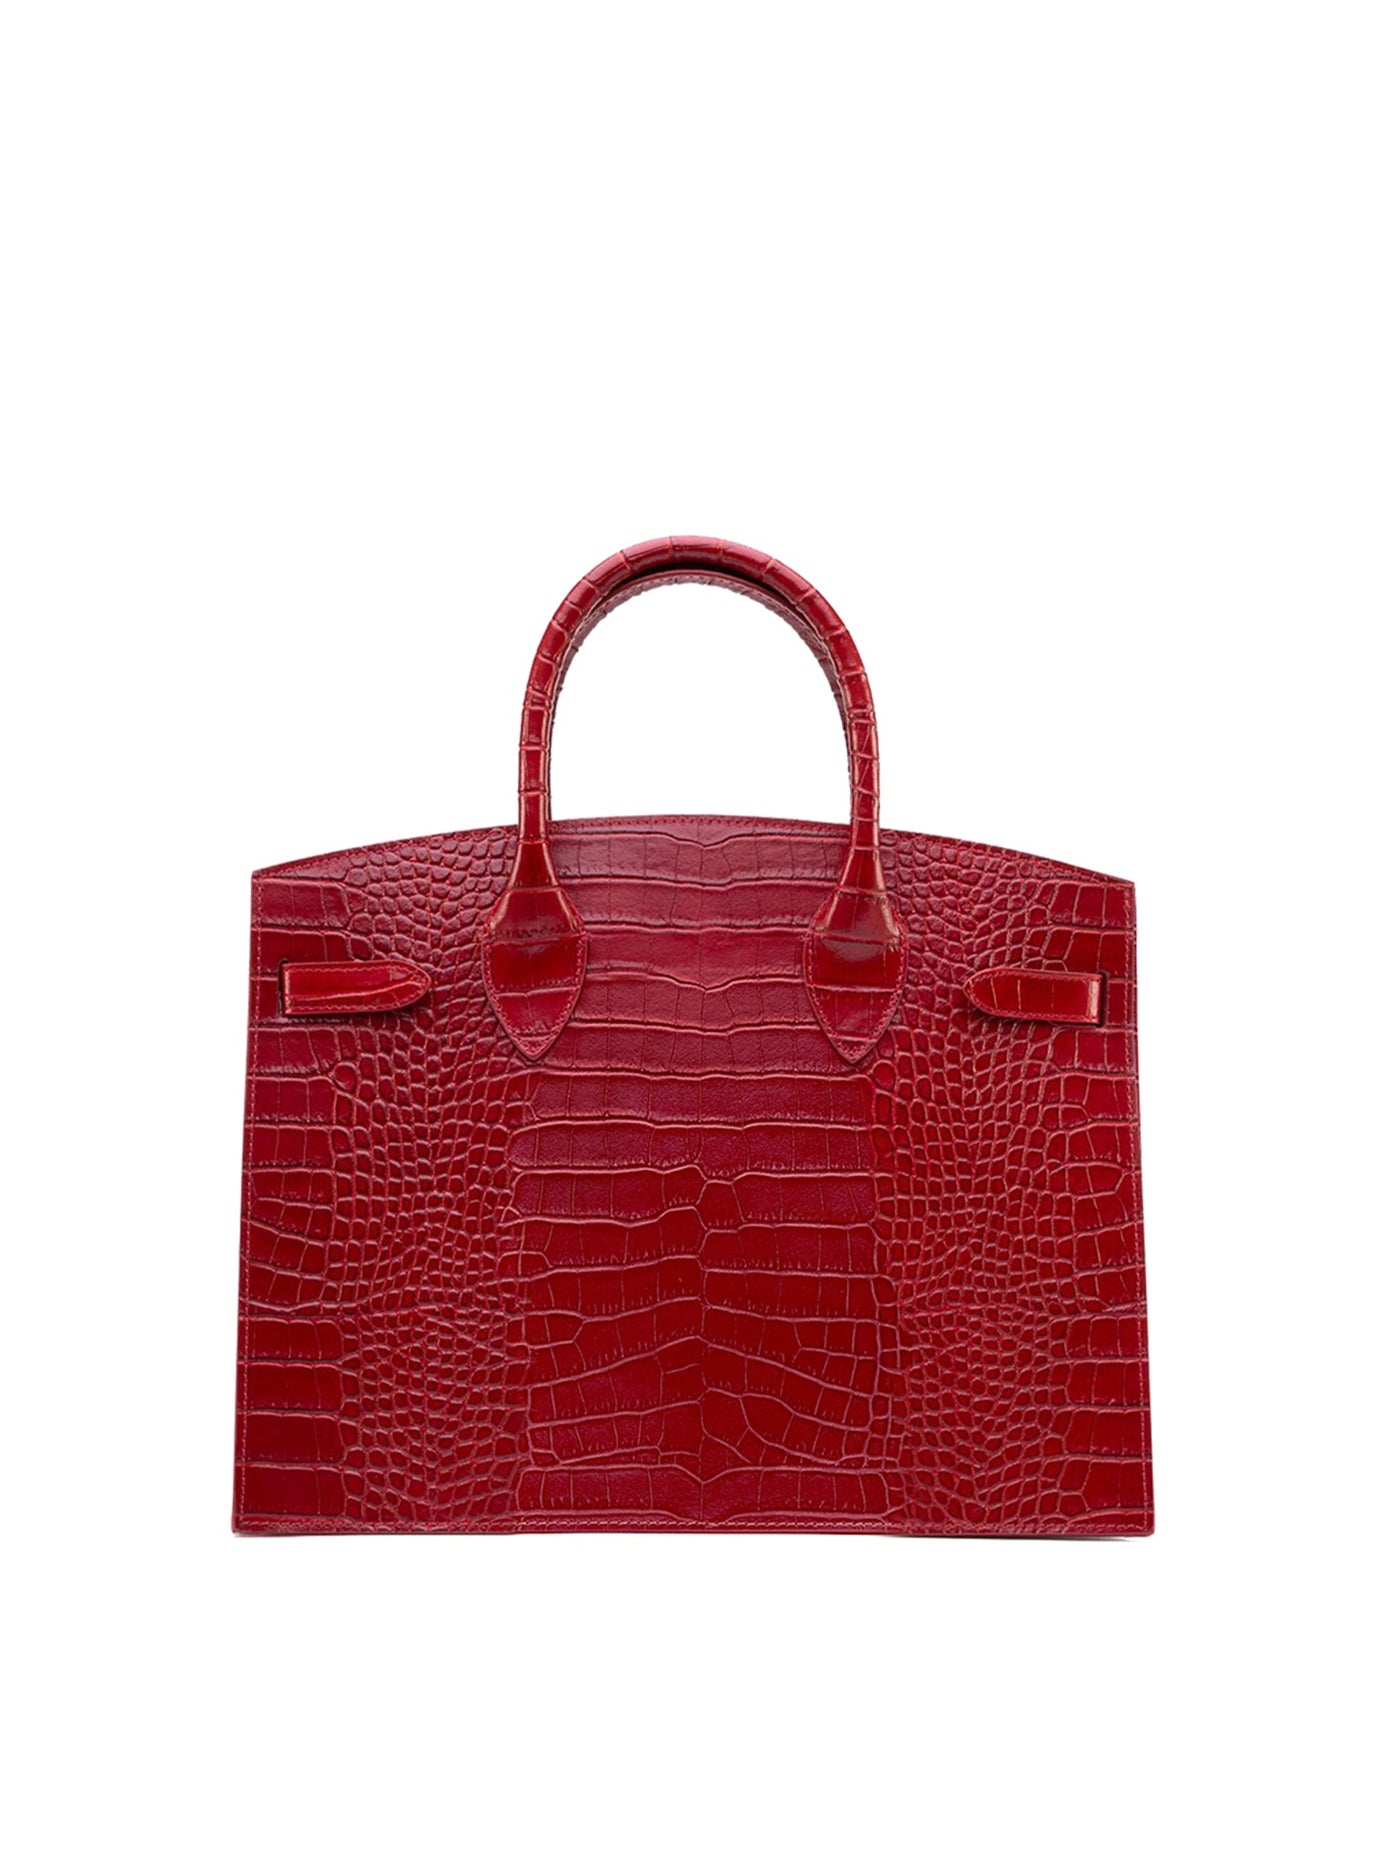 Hermes Birkin Bag Alligator Leather Gold Hardware In Red